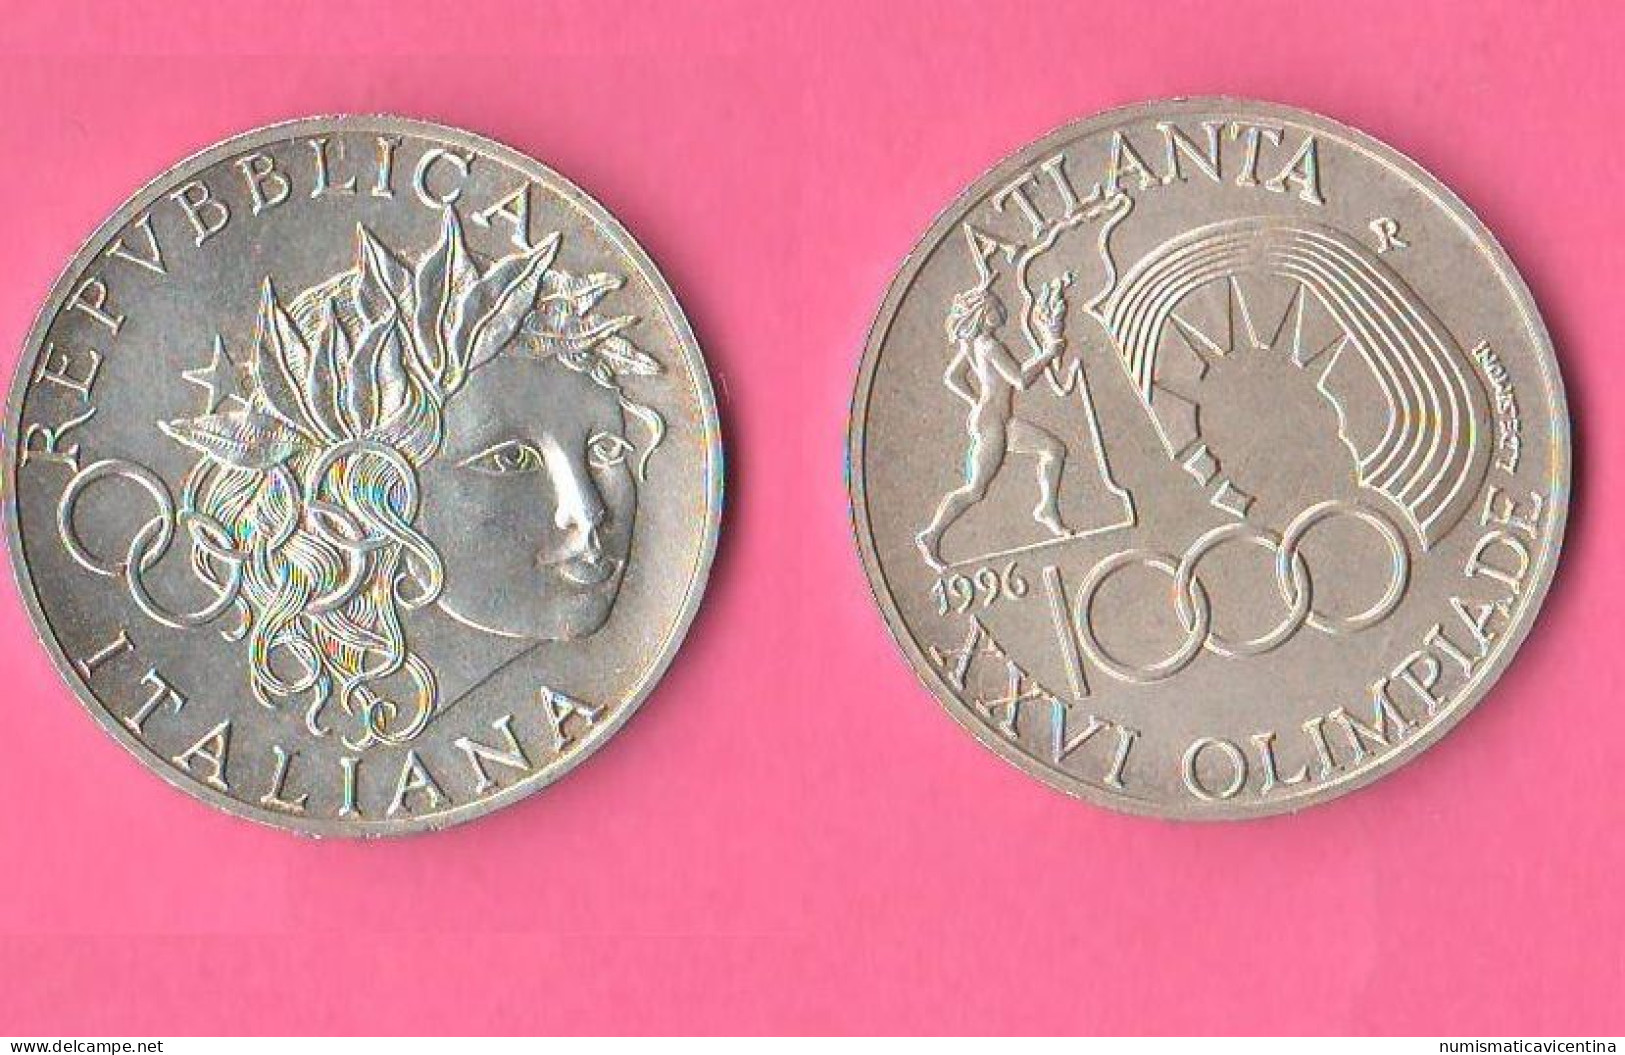 ITALIA 1000 Lire 1996 Olimpiade Atlanta Olympic Games Silver Coin - Commemorative